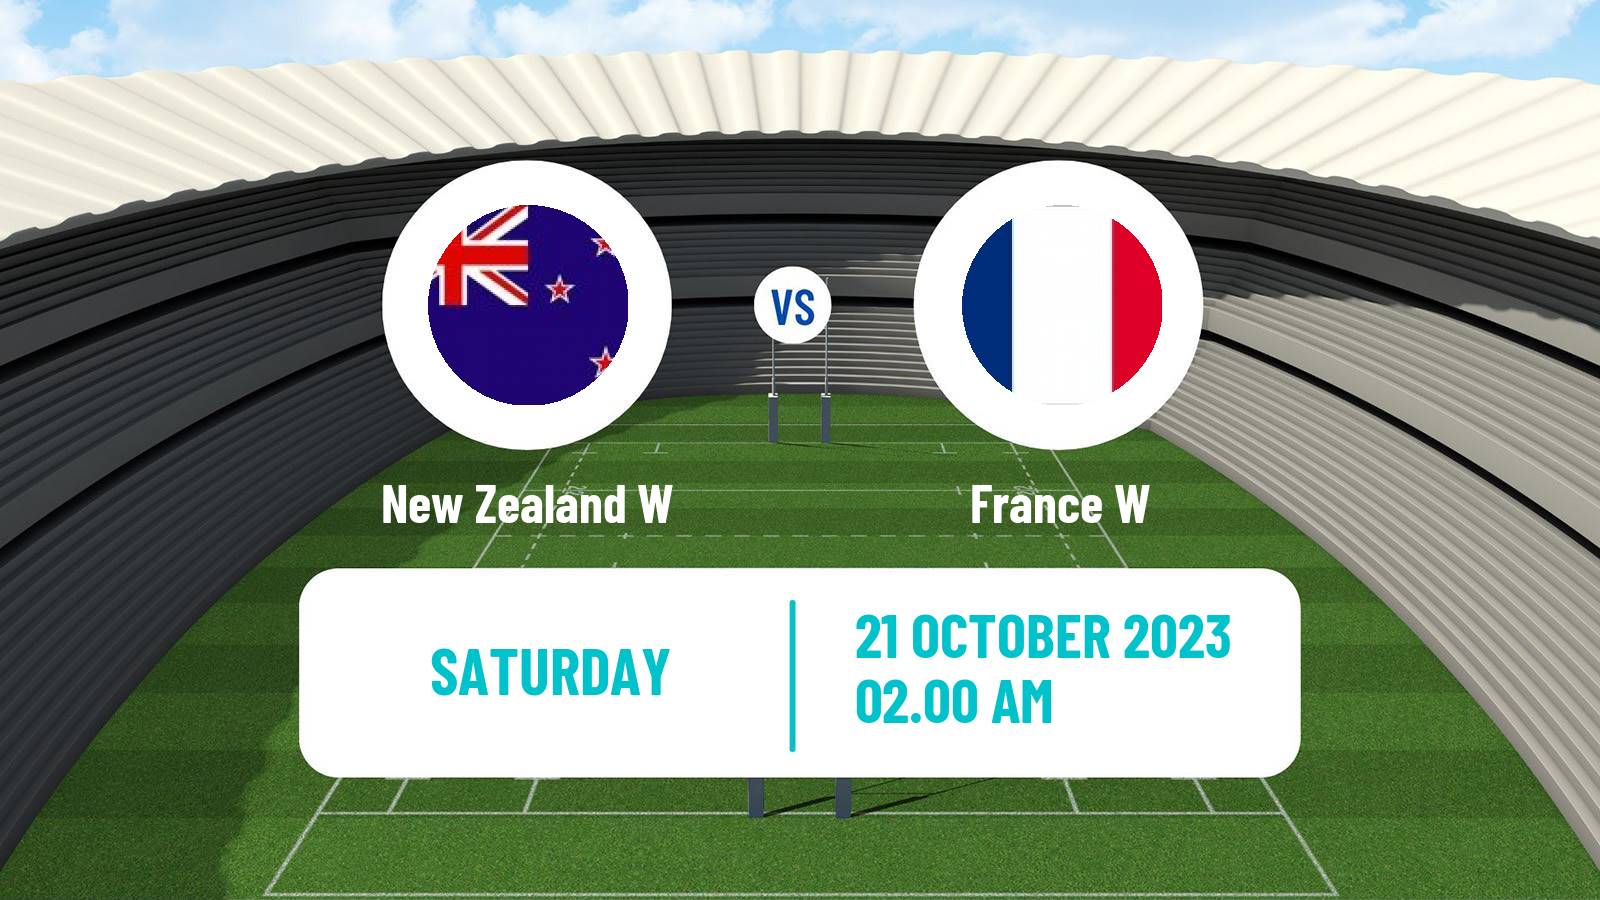 Rugby union WXV 1 Rugby Women New Zealand W - France W